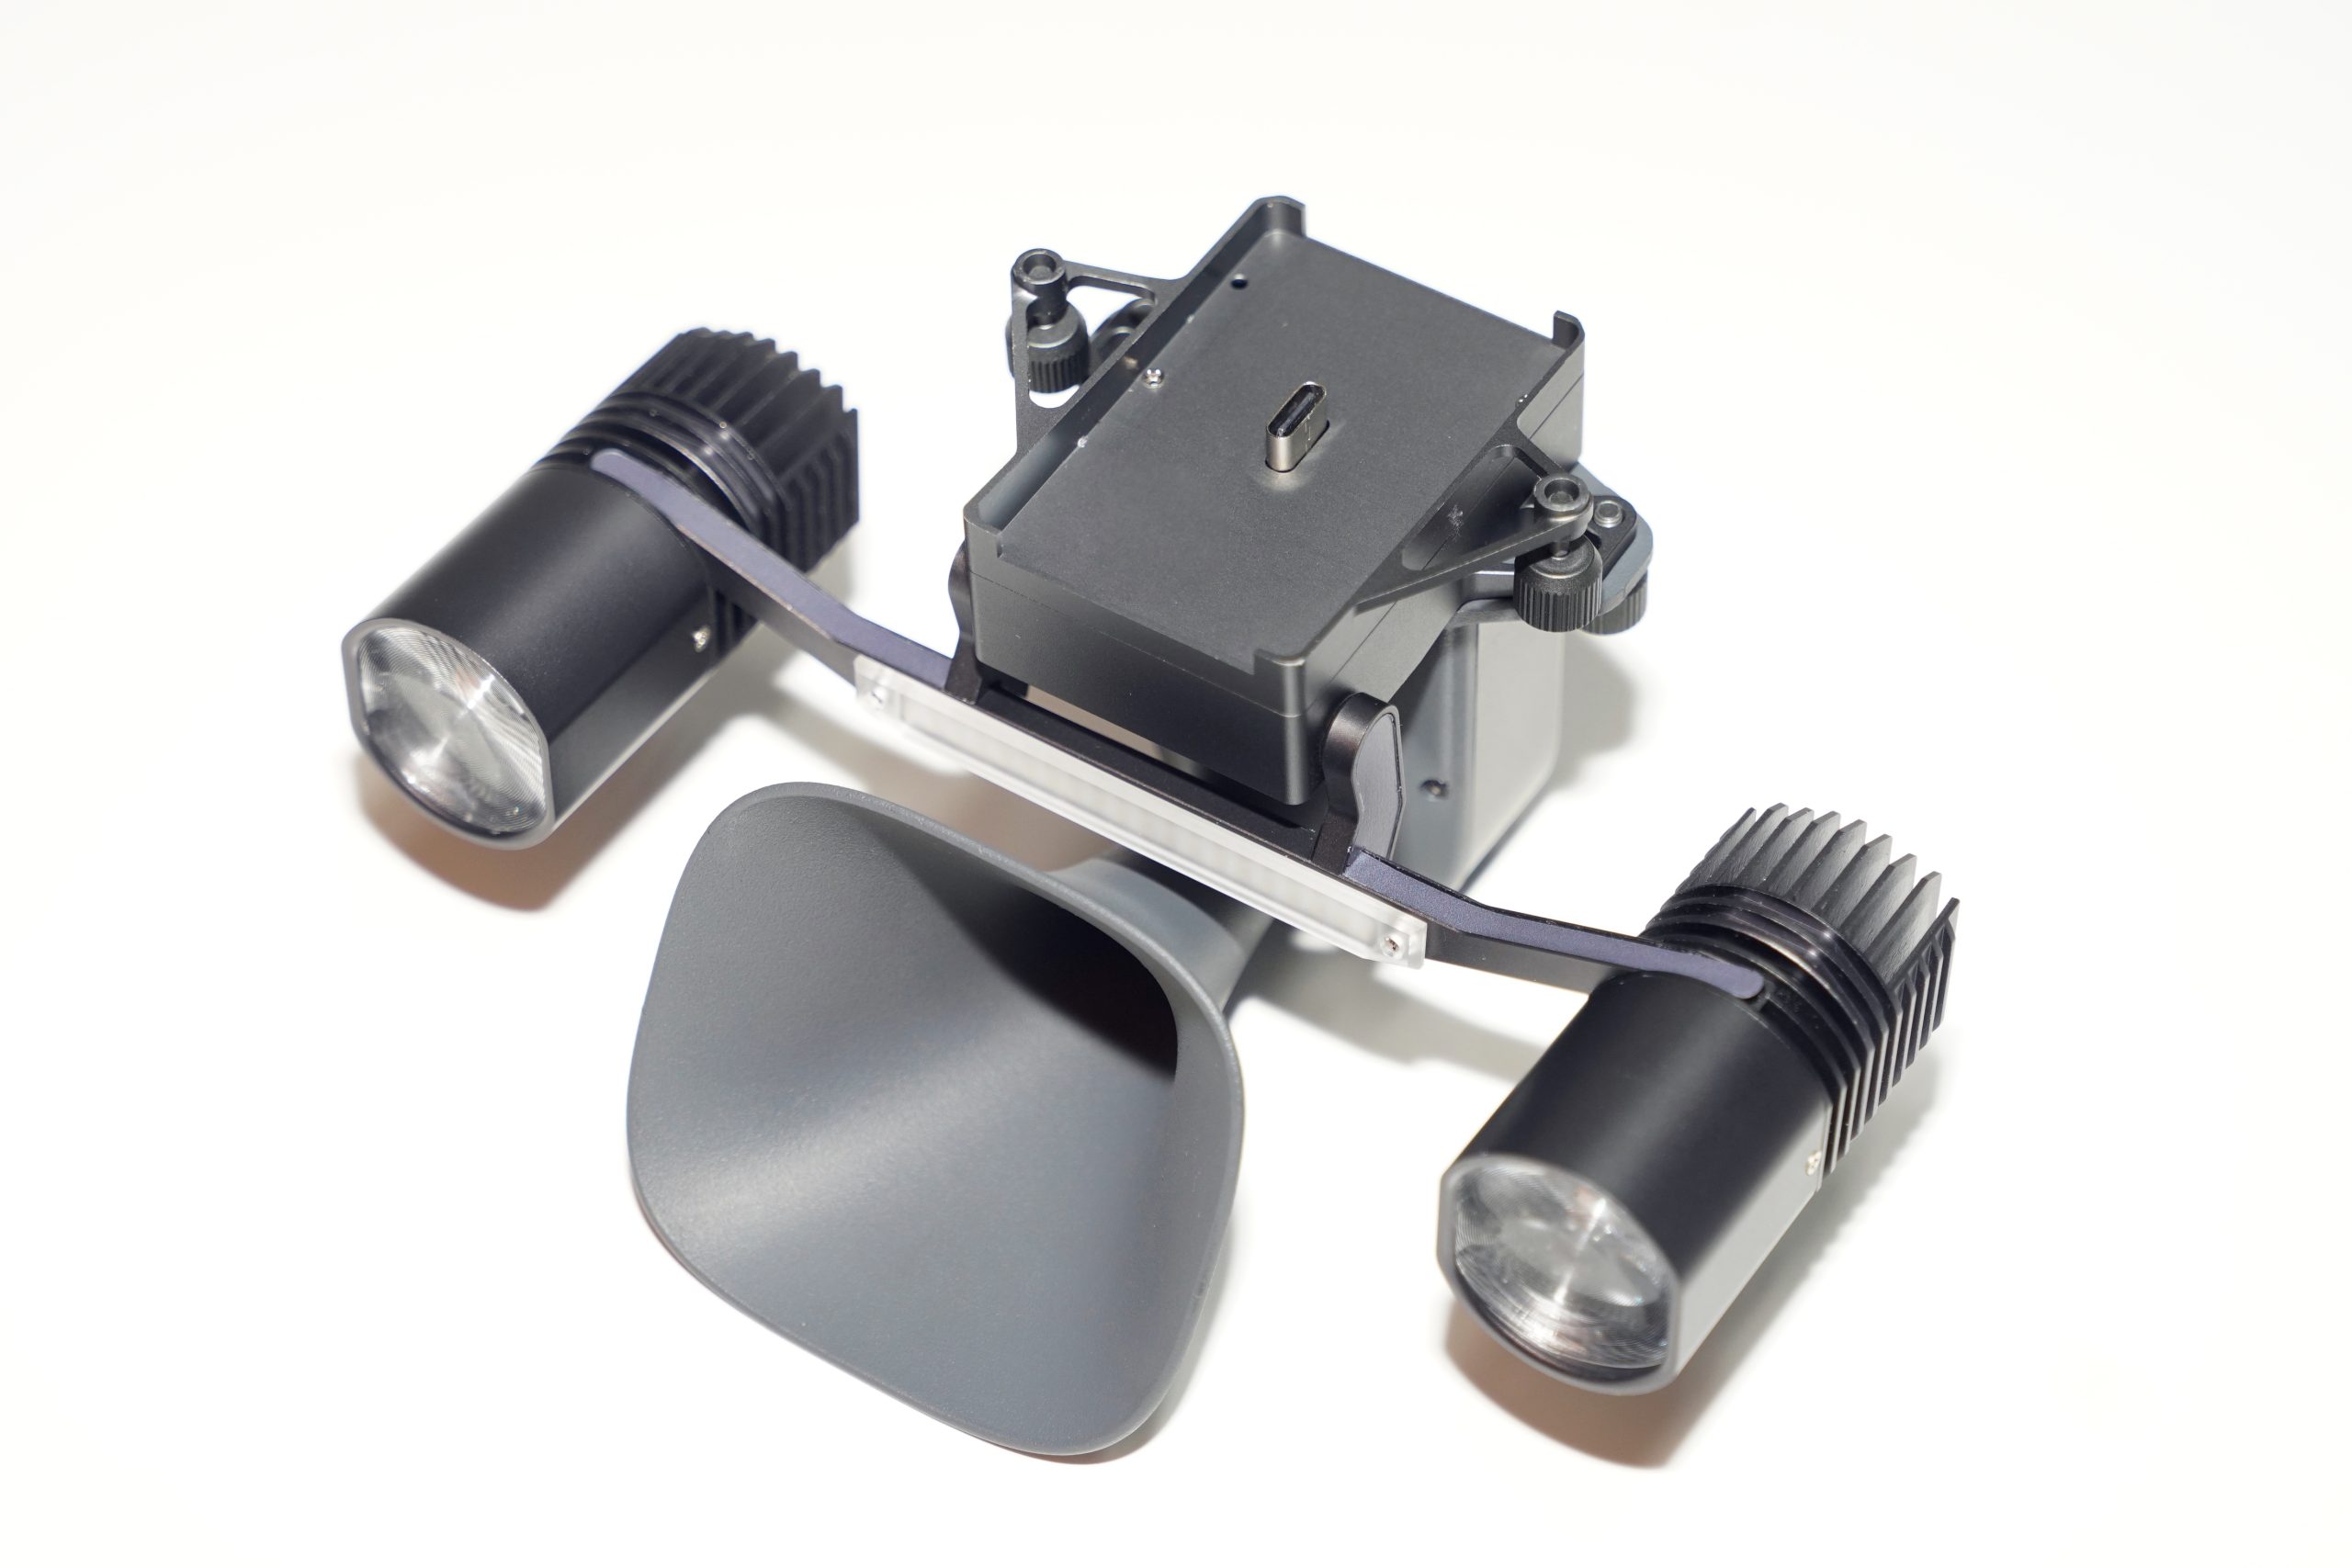 오텔 로보틱스 드론 에보 맥스4T Autel Robotics Drone Max4T 확성기 스피커 스팟 집중 라이트 Loud Speaker Spot light combo